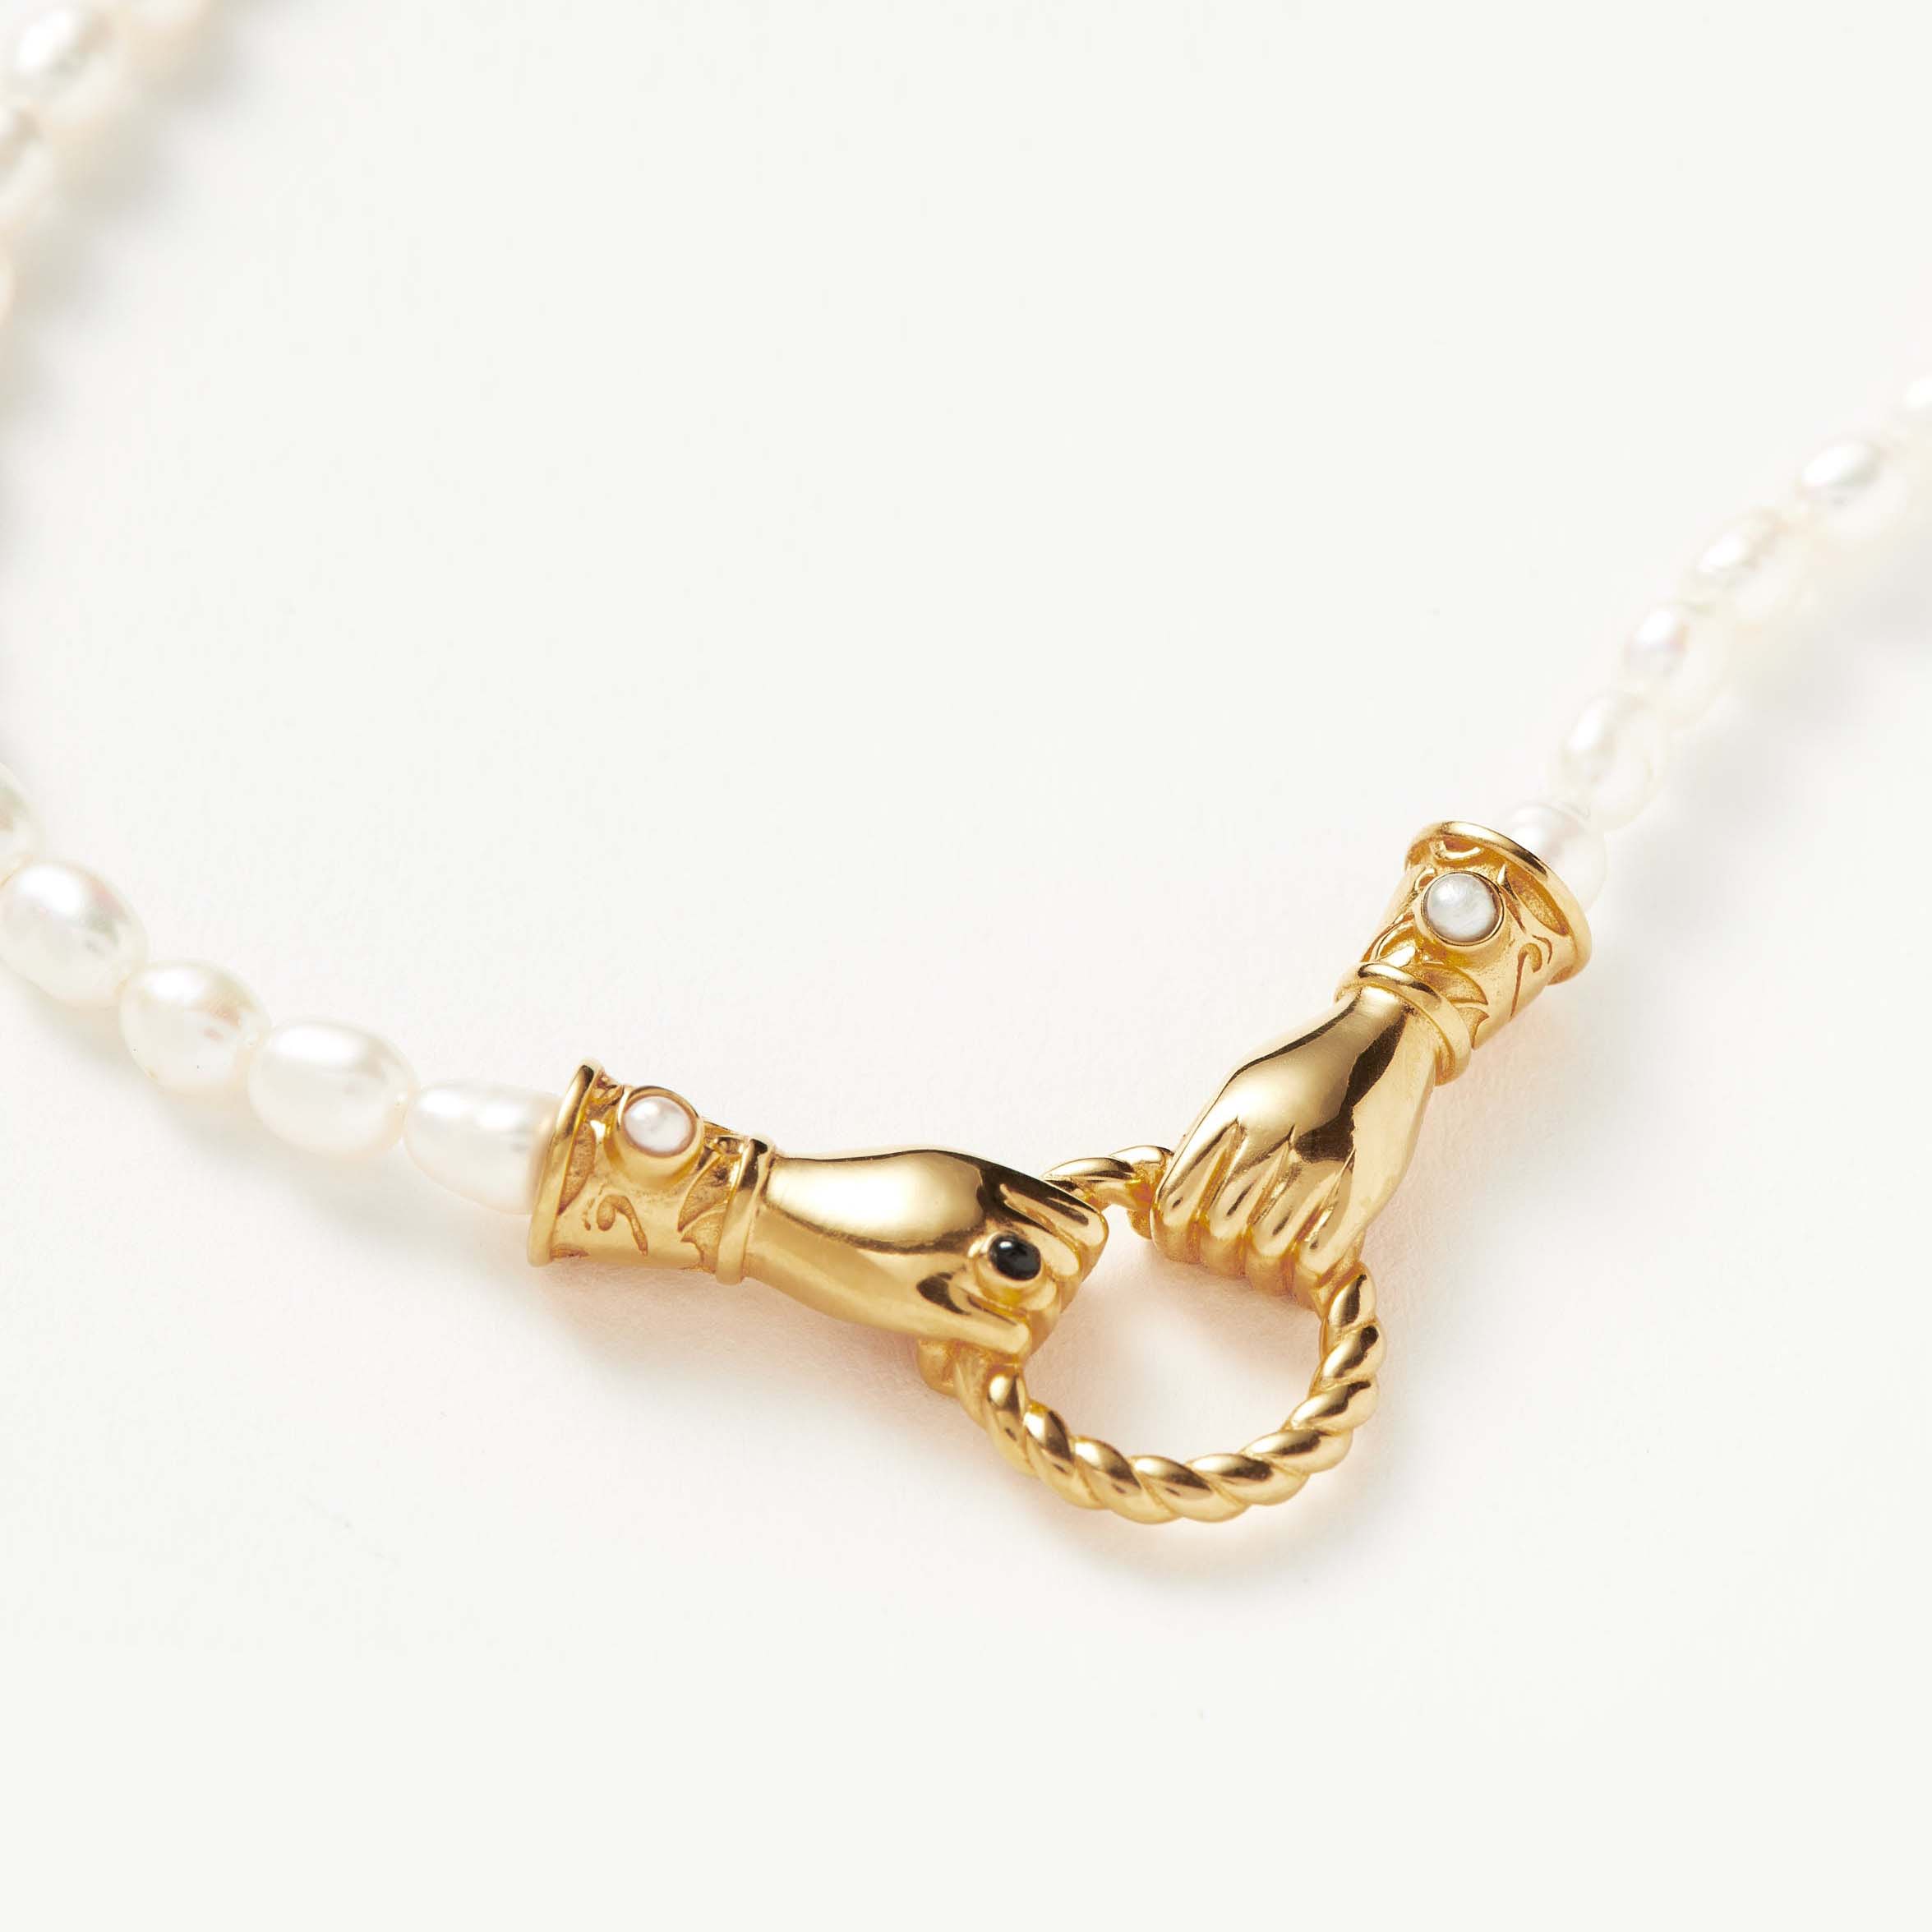 Zakázkový velkoobchodní poskytovatel šperků harris reed v dobrých rukou perlový náhrdelník